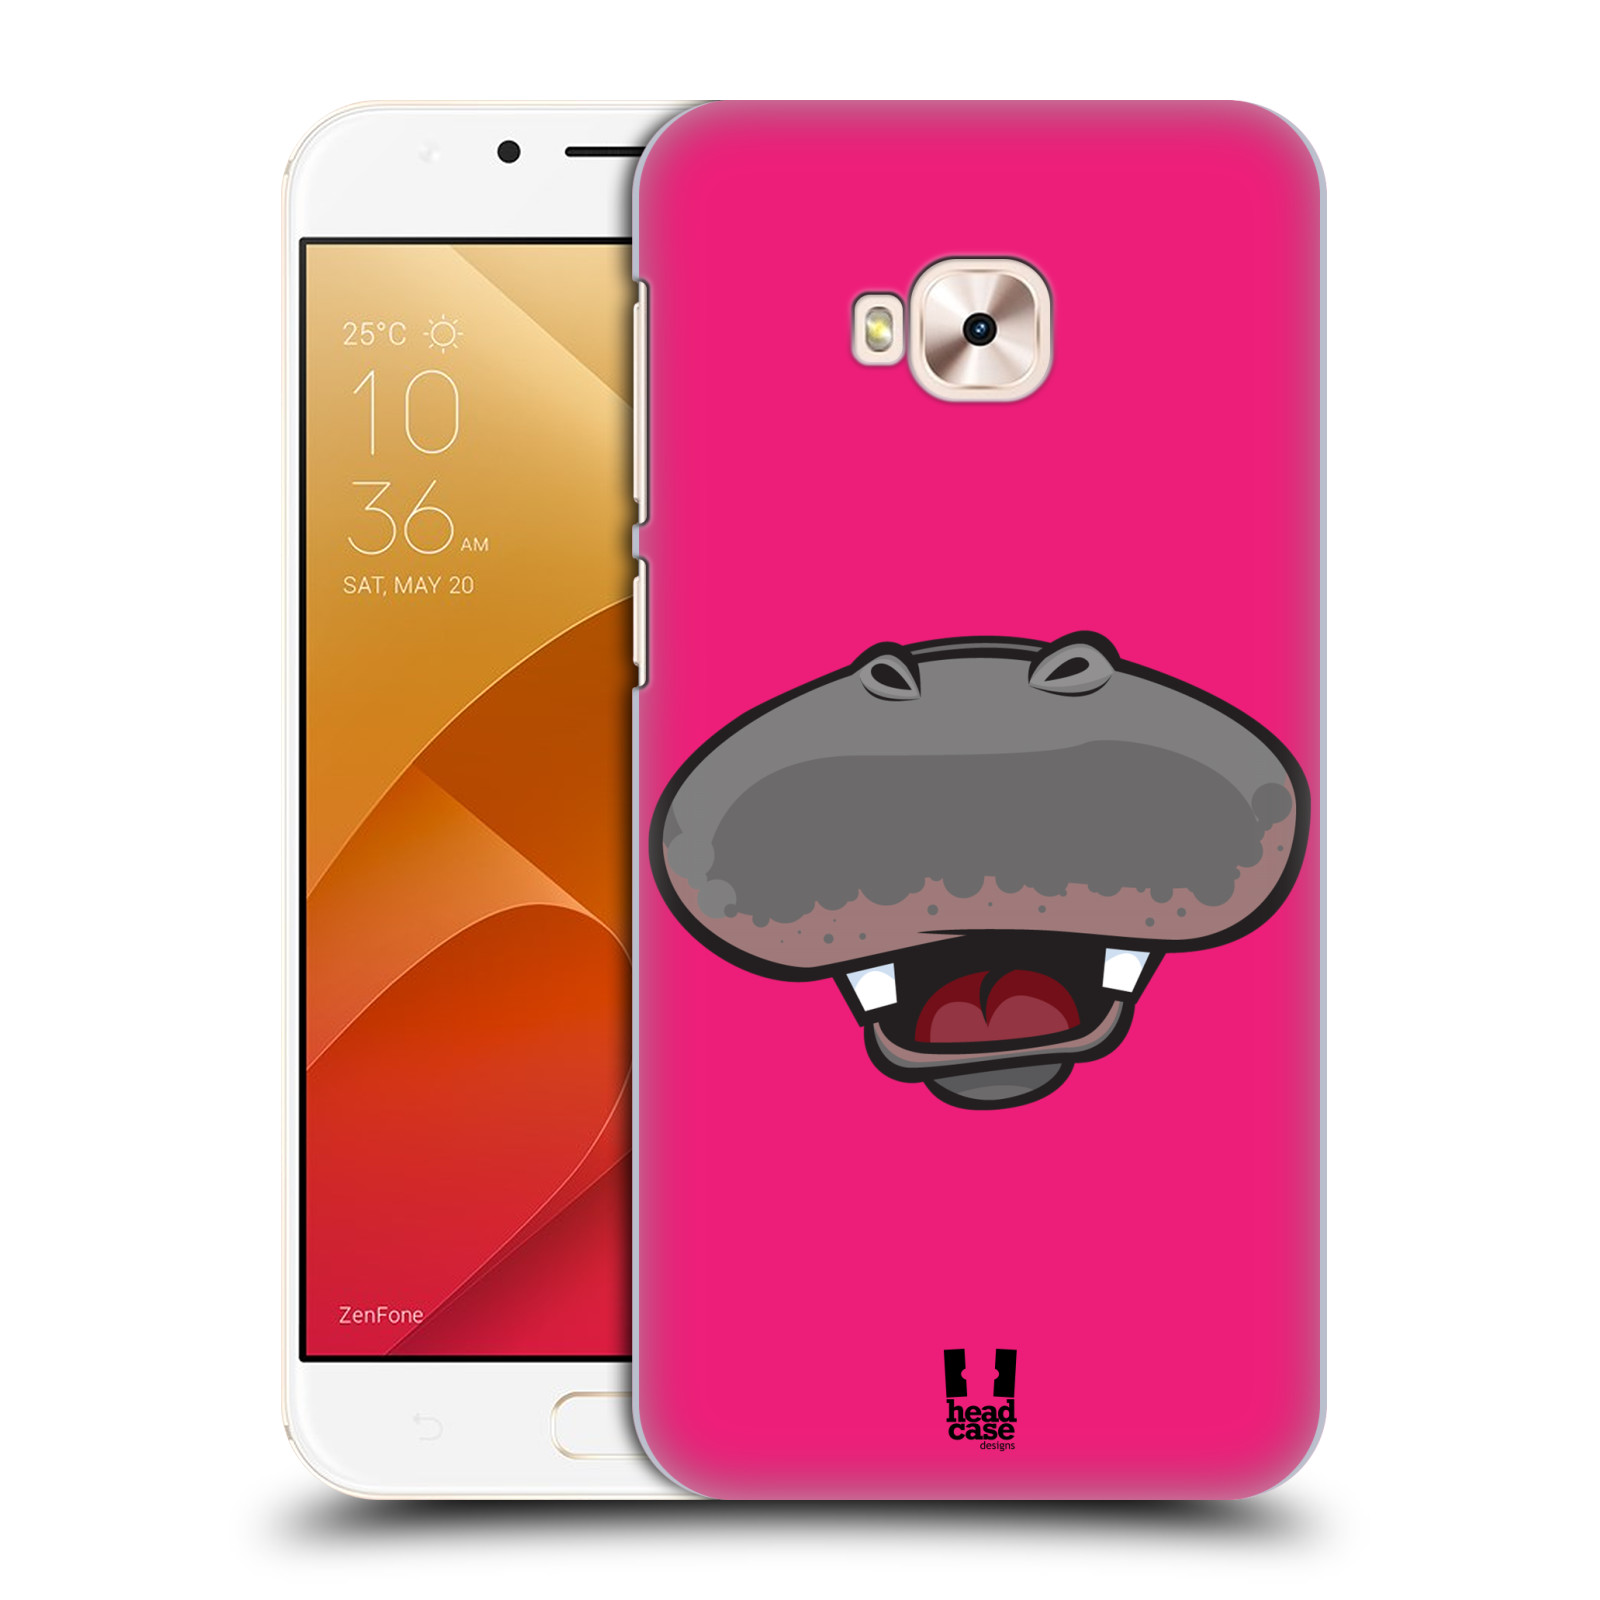 HEAD CASE plastový obal na mobil Asus Zenfone 4 Selfie Pro ZD552KL vzor Zvířecí úsměv hroch růžová